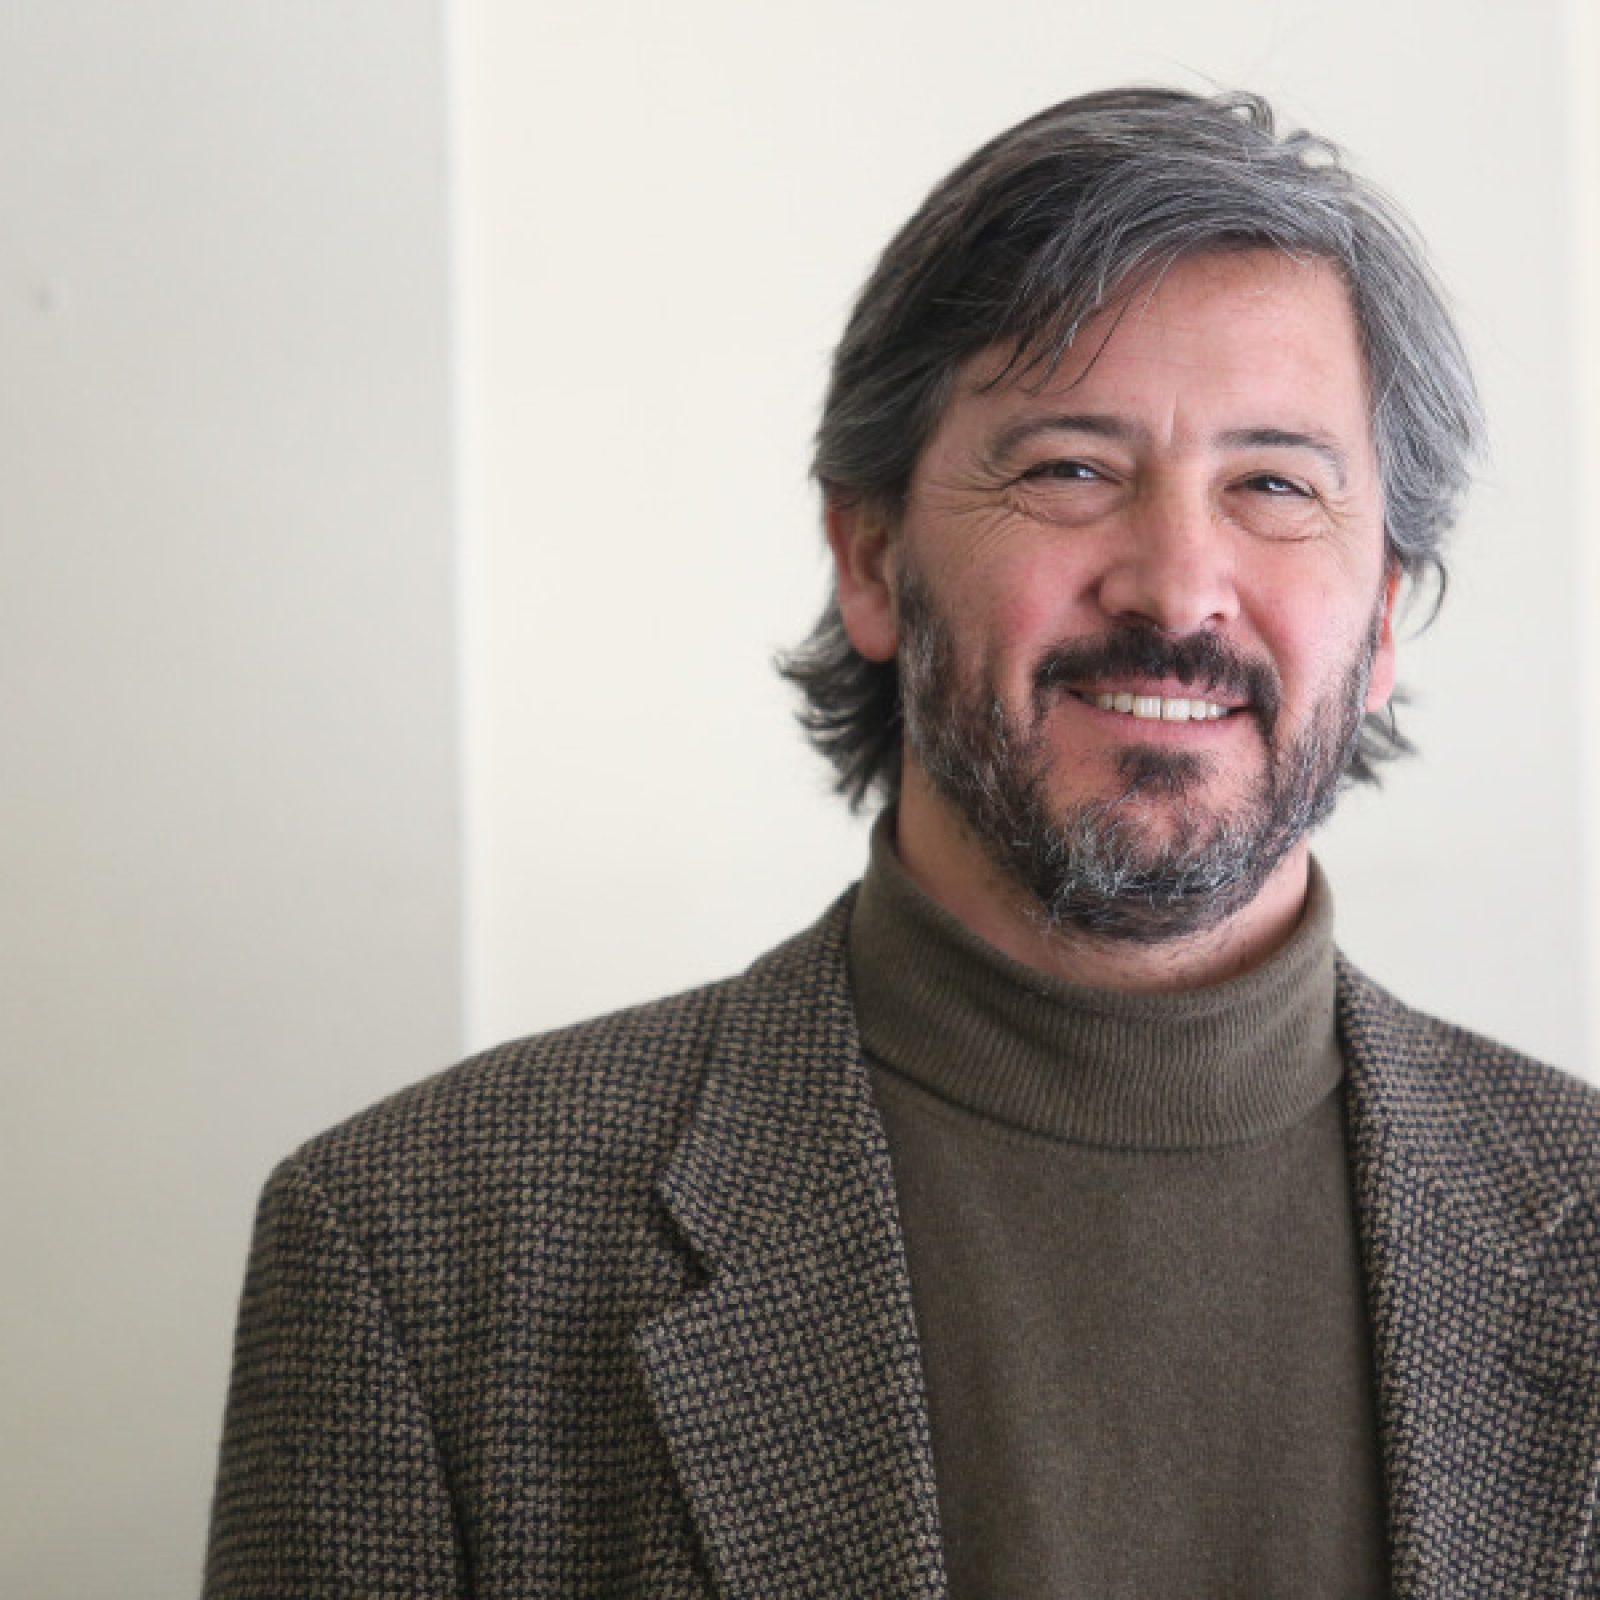 Pablo Rojas Durán, jefe del departamento de Educación del Ministerio de las Culturas, las Artes y el Patrimonio